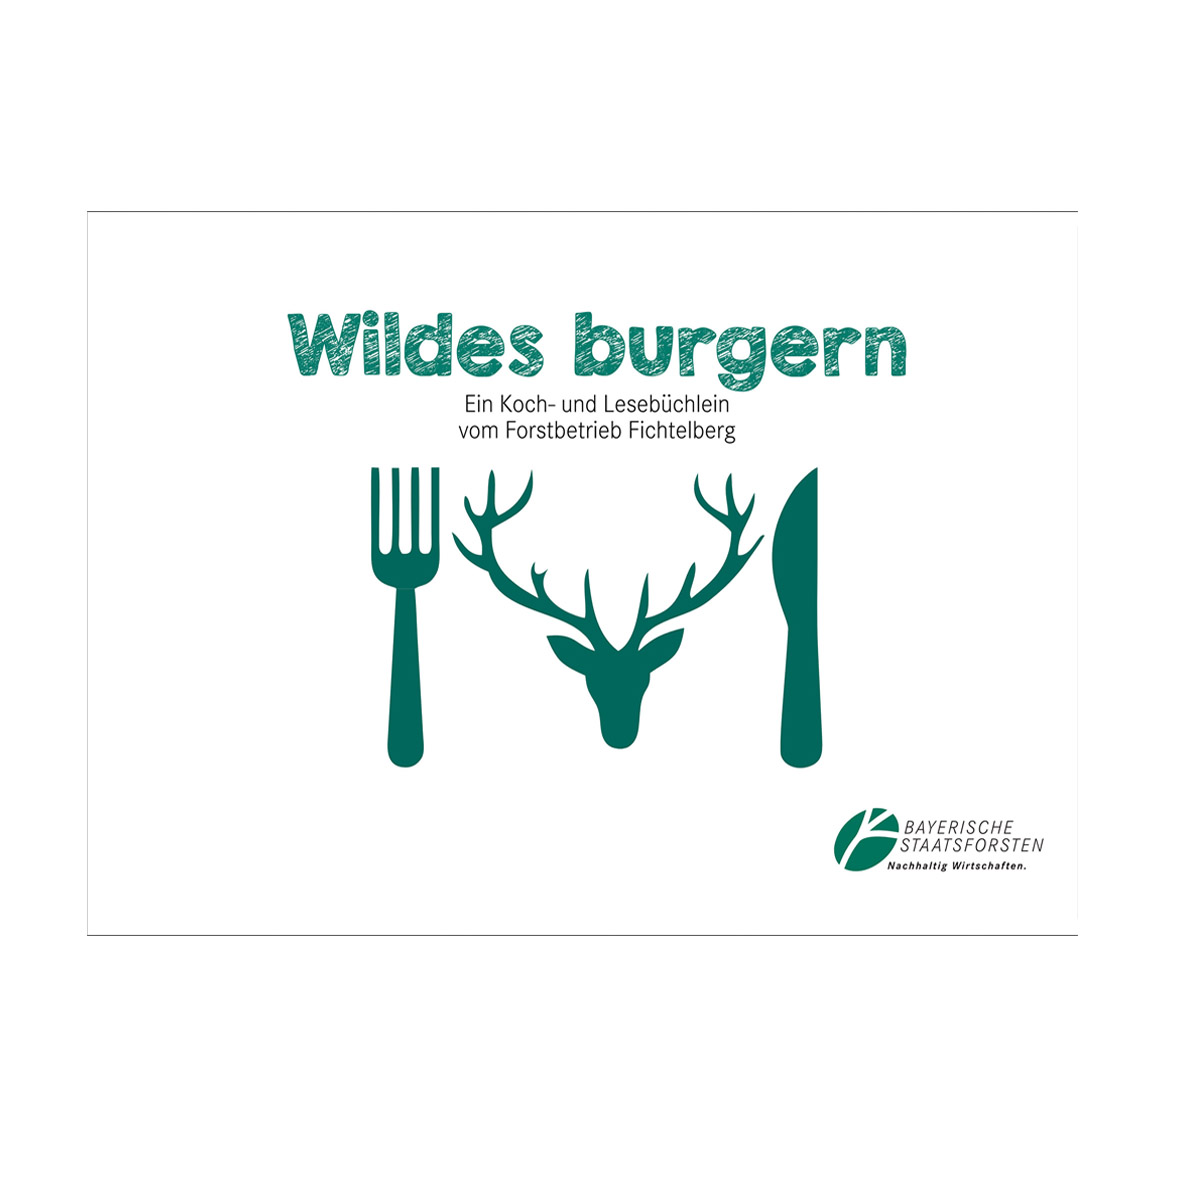 Wildkochbuch - Wildes burgern